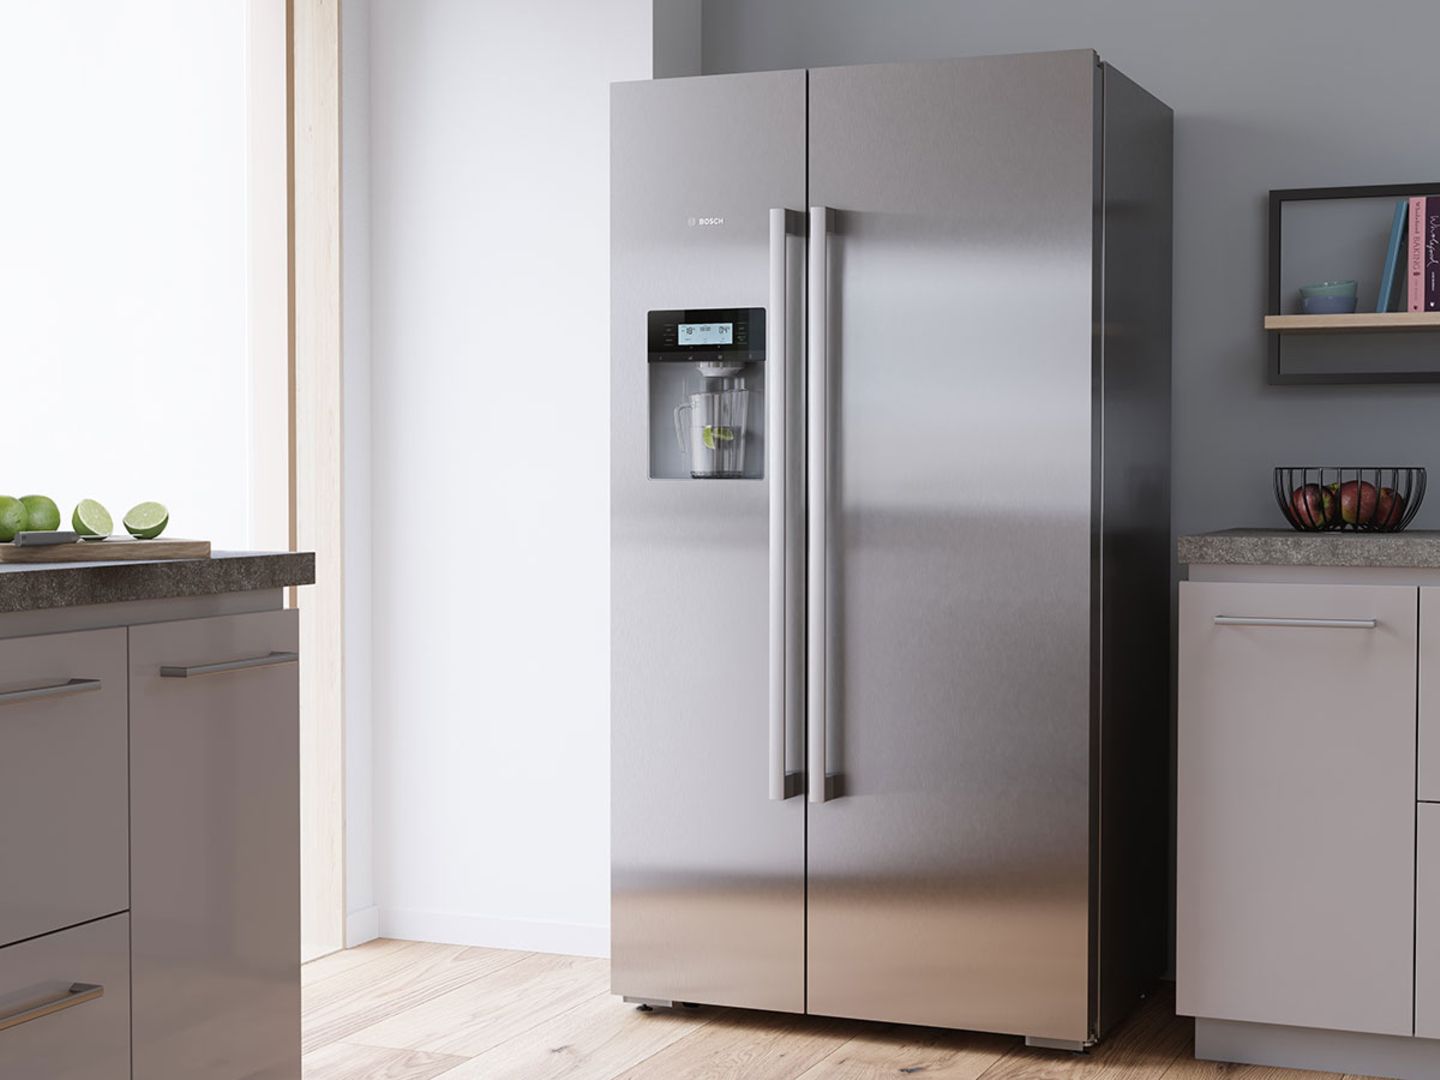 Küche mit amerikanischem Side by Side-Kühlschrank aus der Serie 6 von Bosch